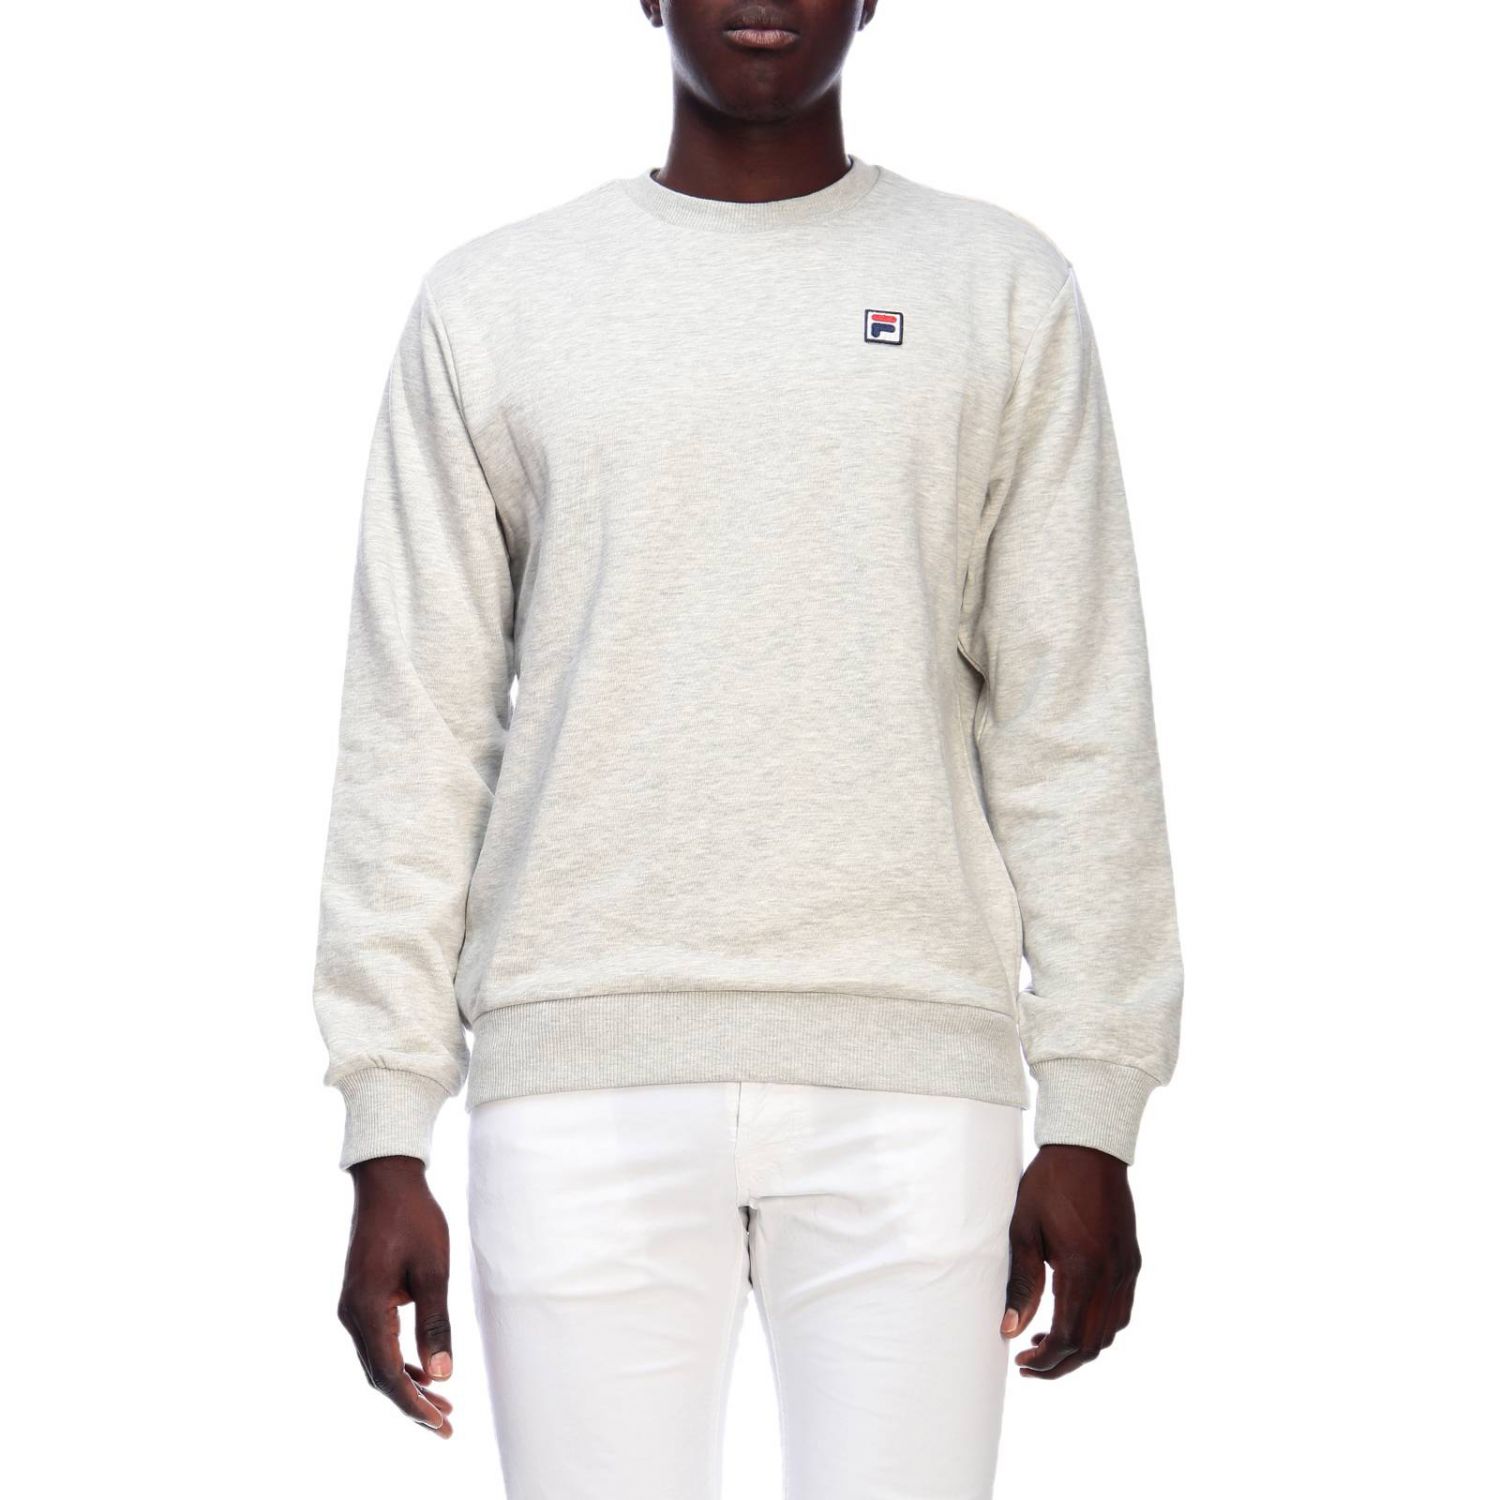 Fila Outlet: sweatshirt for man - Grey | Fila sweatshirt 687002 online ...